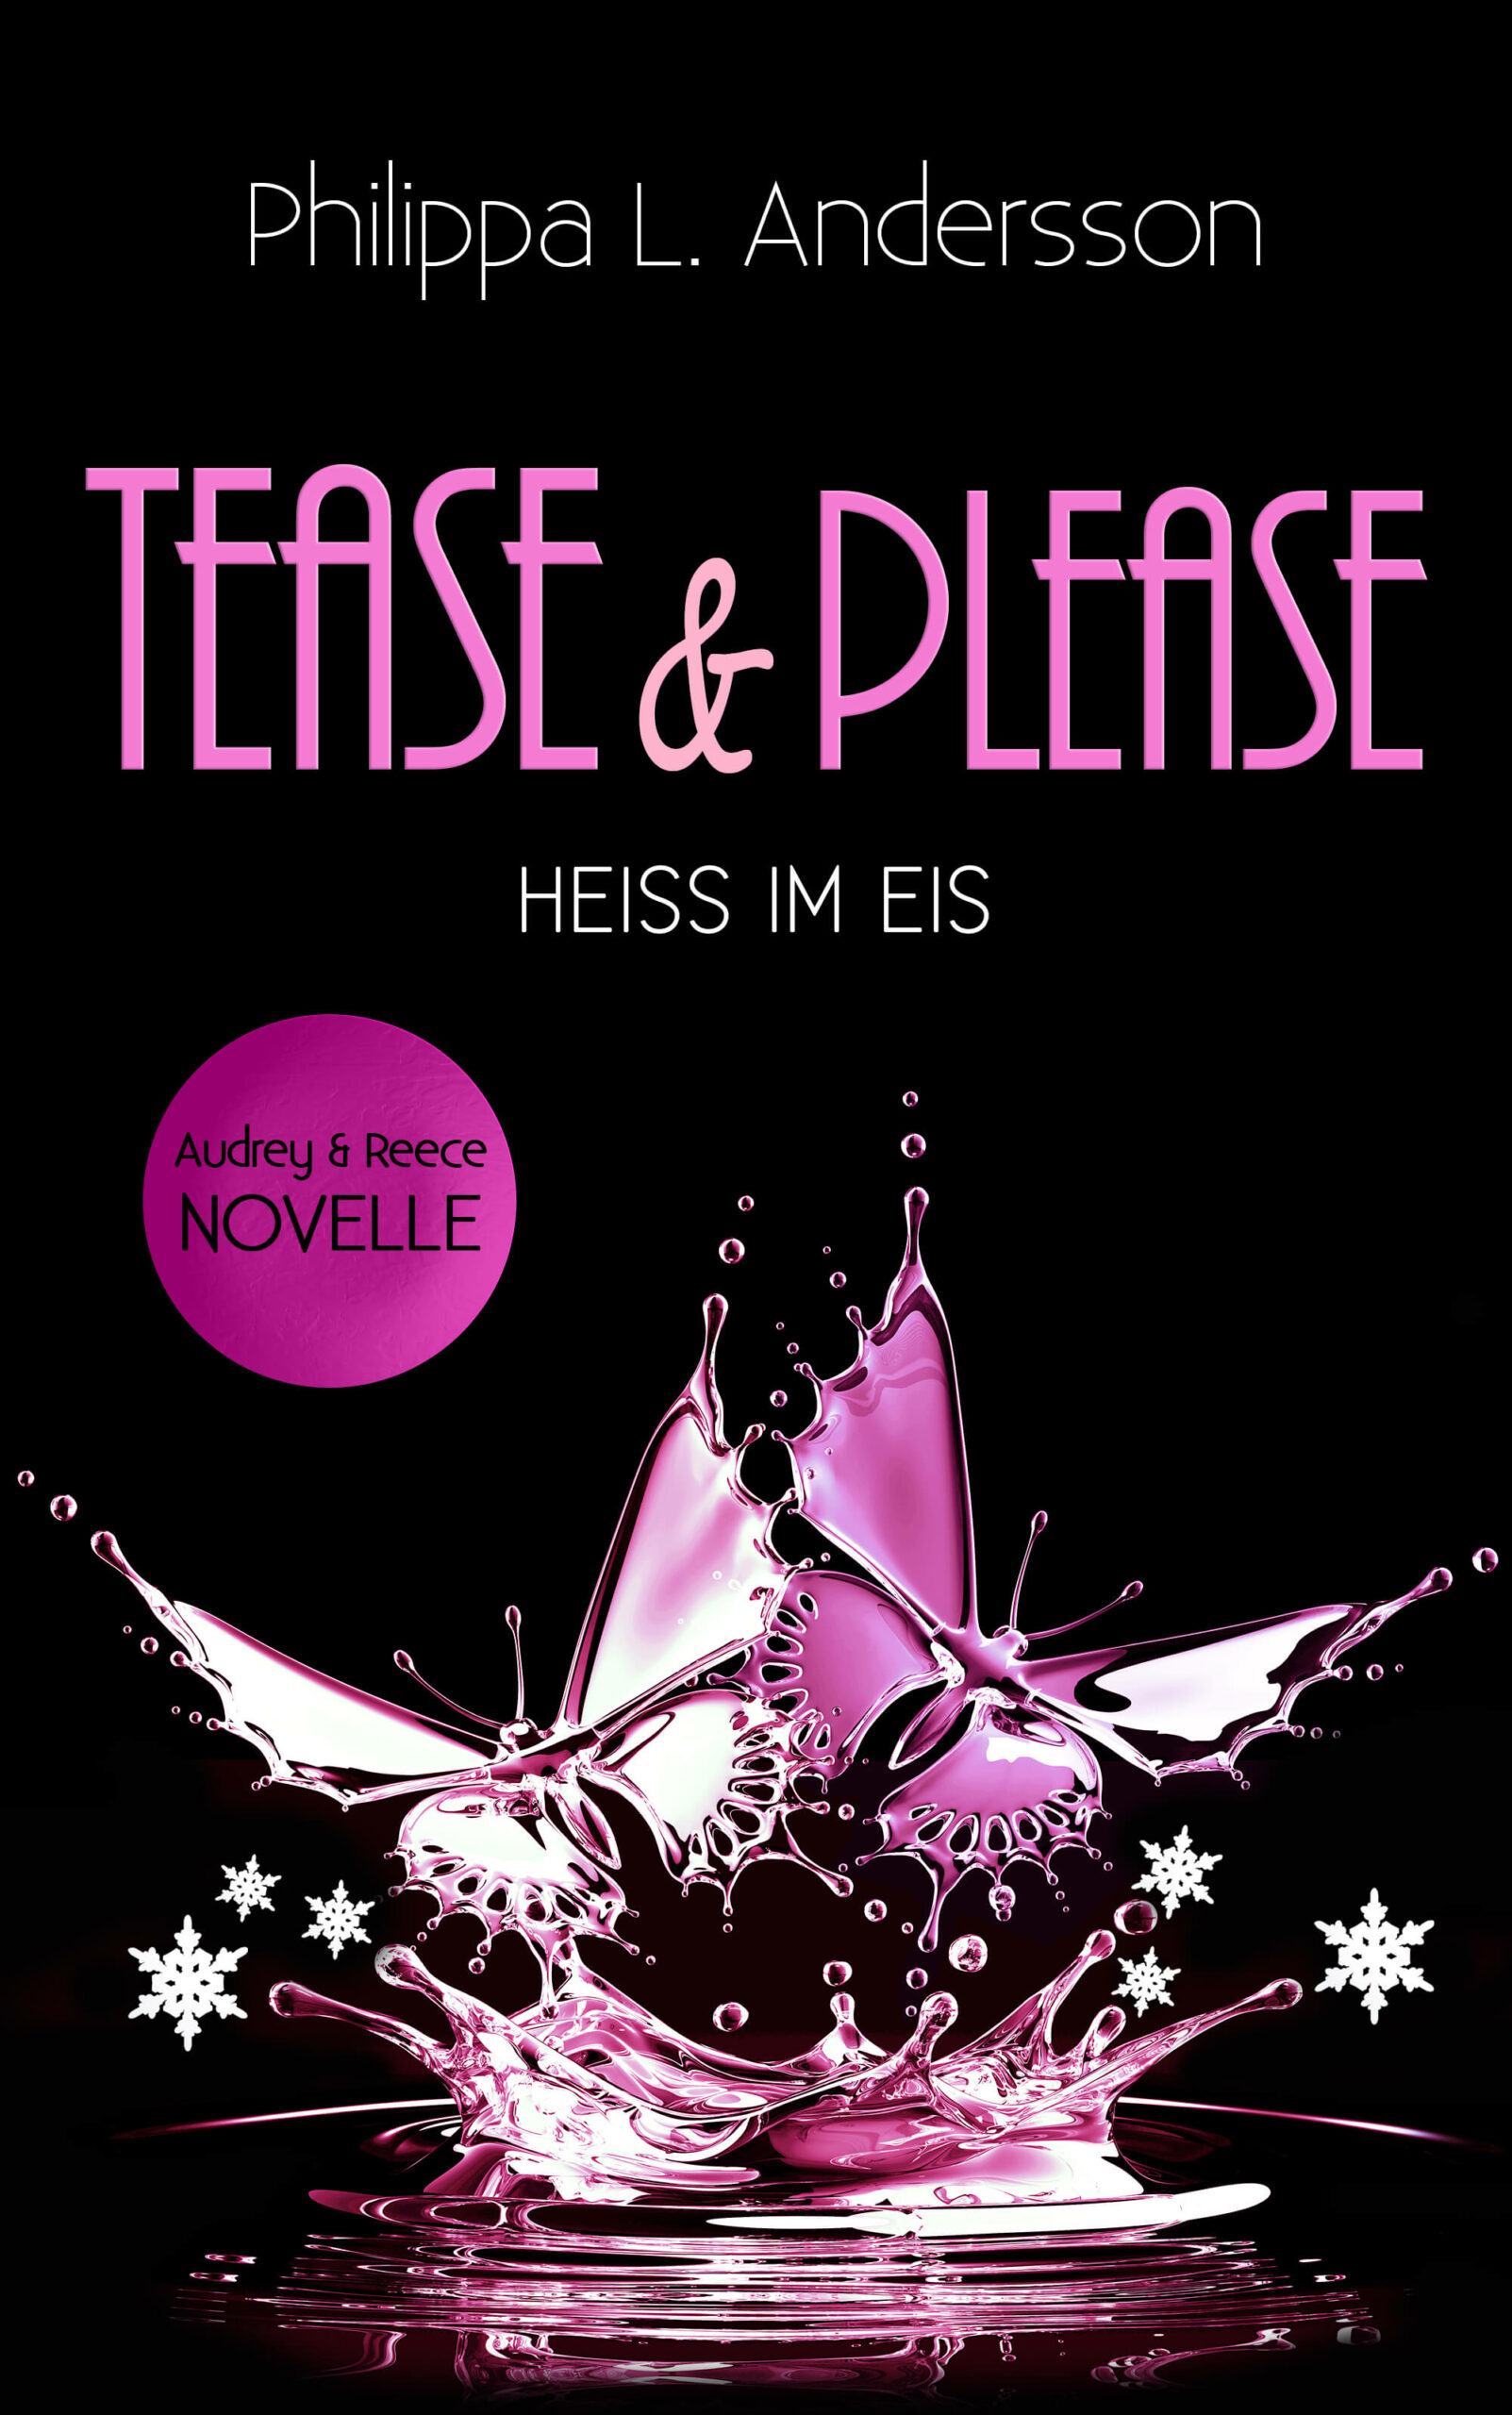 Tease & Please – HEISS IM EIS